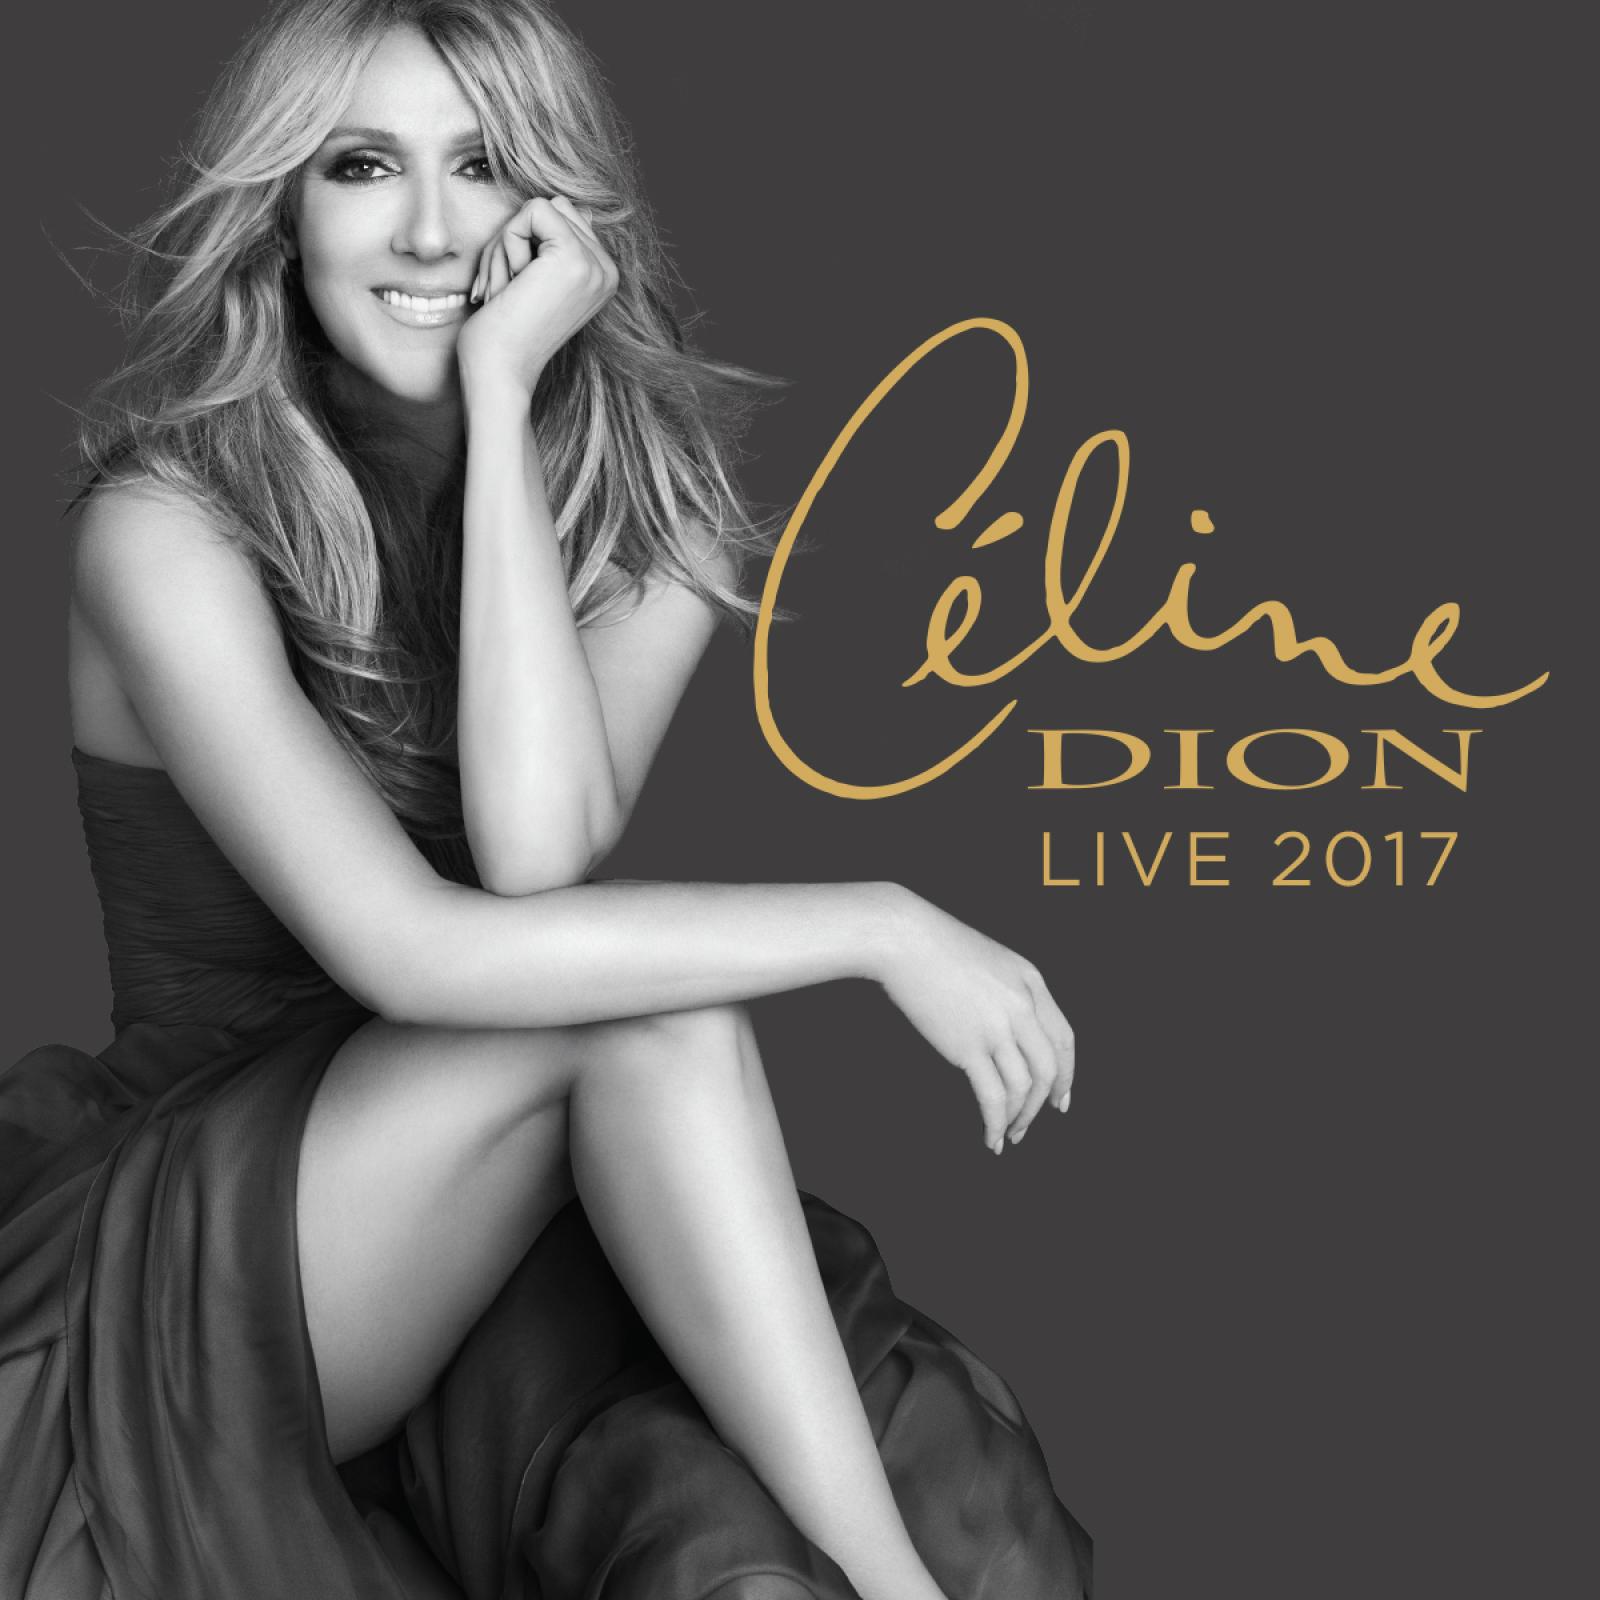 J-30 avant le concert de Céline Dion à Nice !